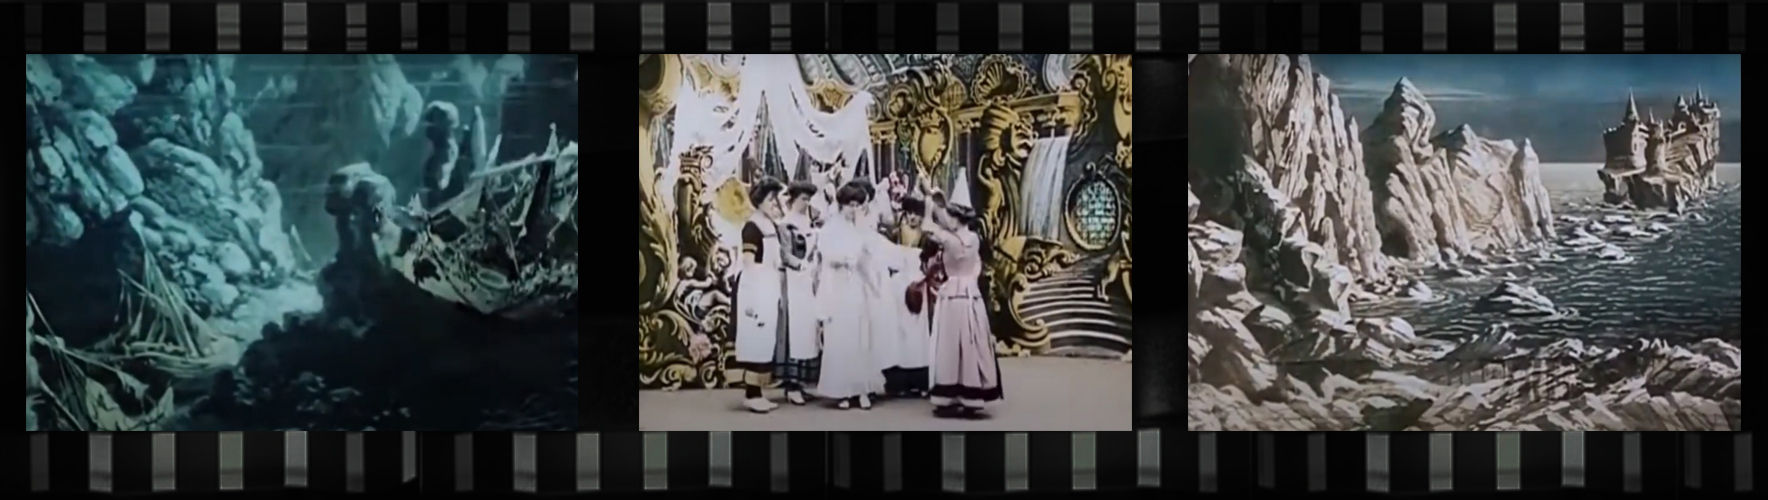 Три кадра из фильма 'Королевство фей' (1903)